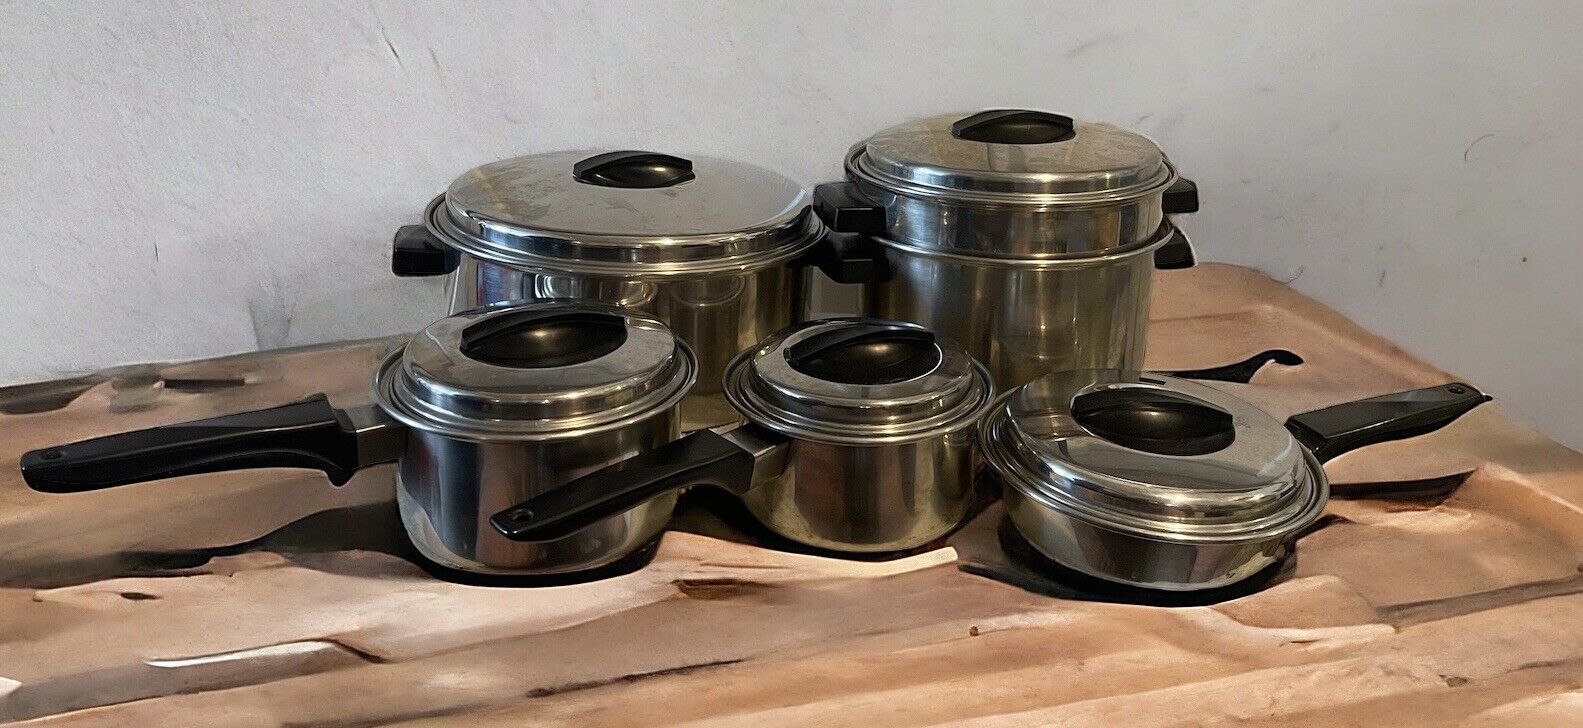 VTG Flint Ekco Stainless Steel Pan Set 1, 1.5, 4, 6 Quart, 7” Skillet & Lids